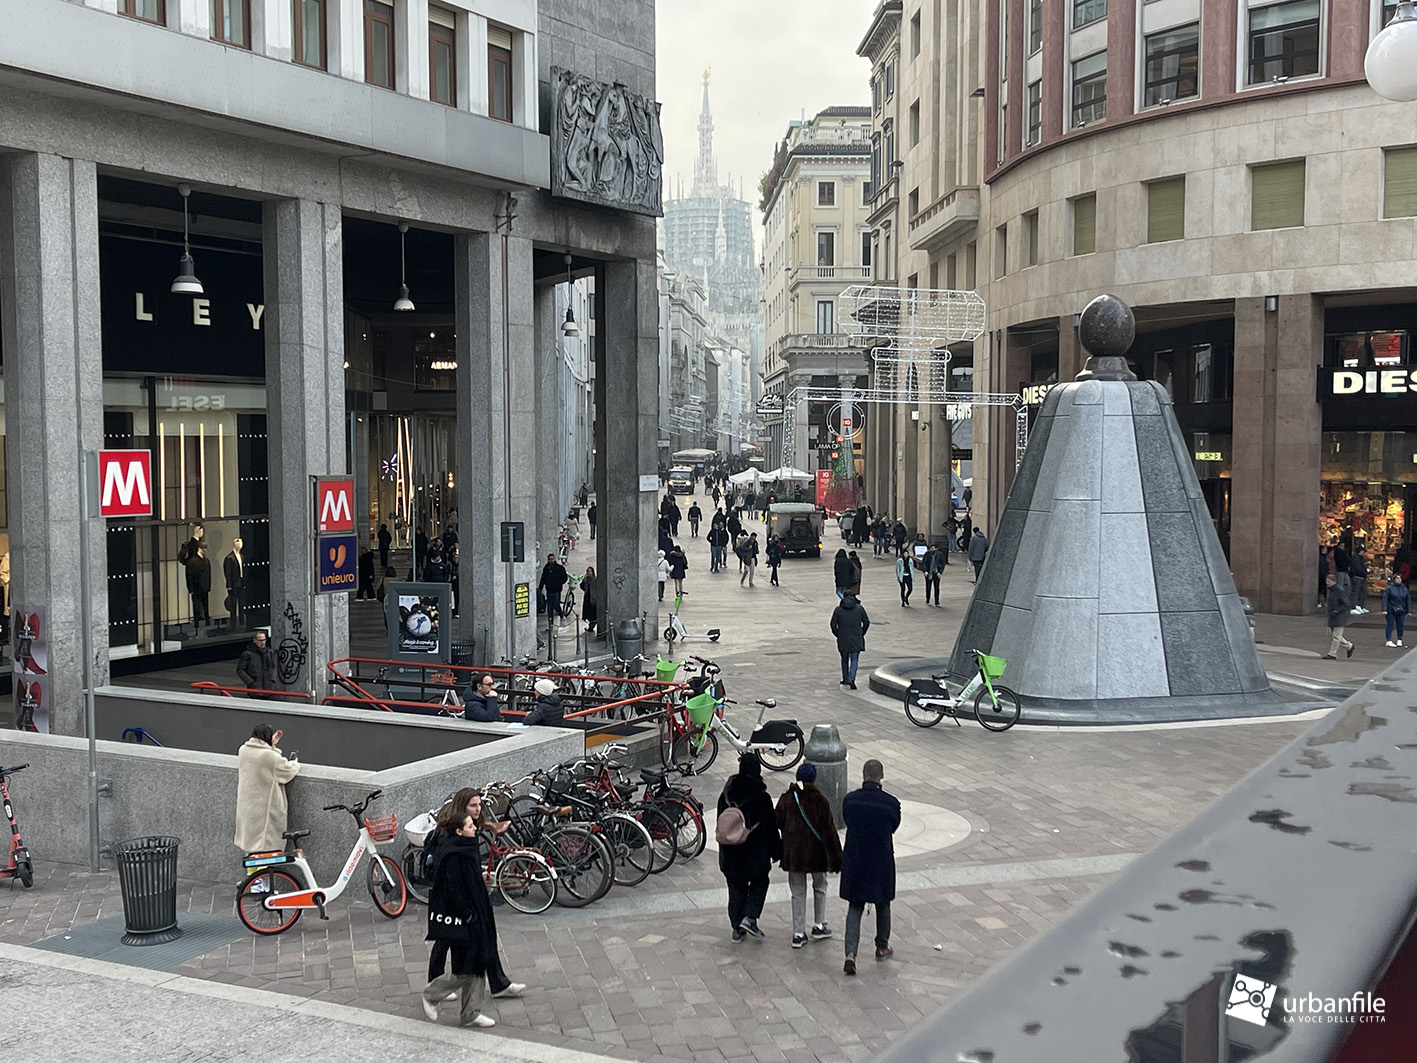 Milano  Arredo urbano: le rastrelliere per biciclette - Urbanfile